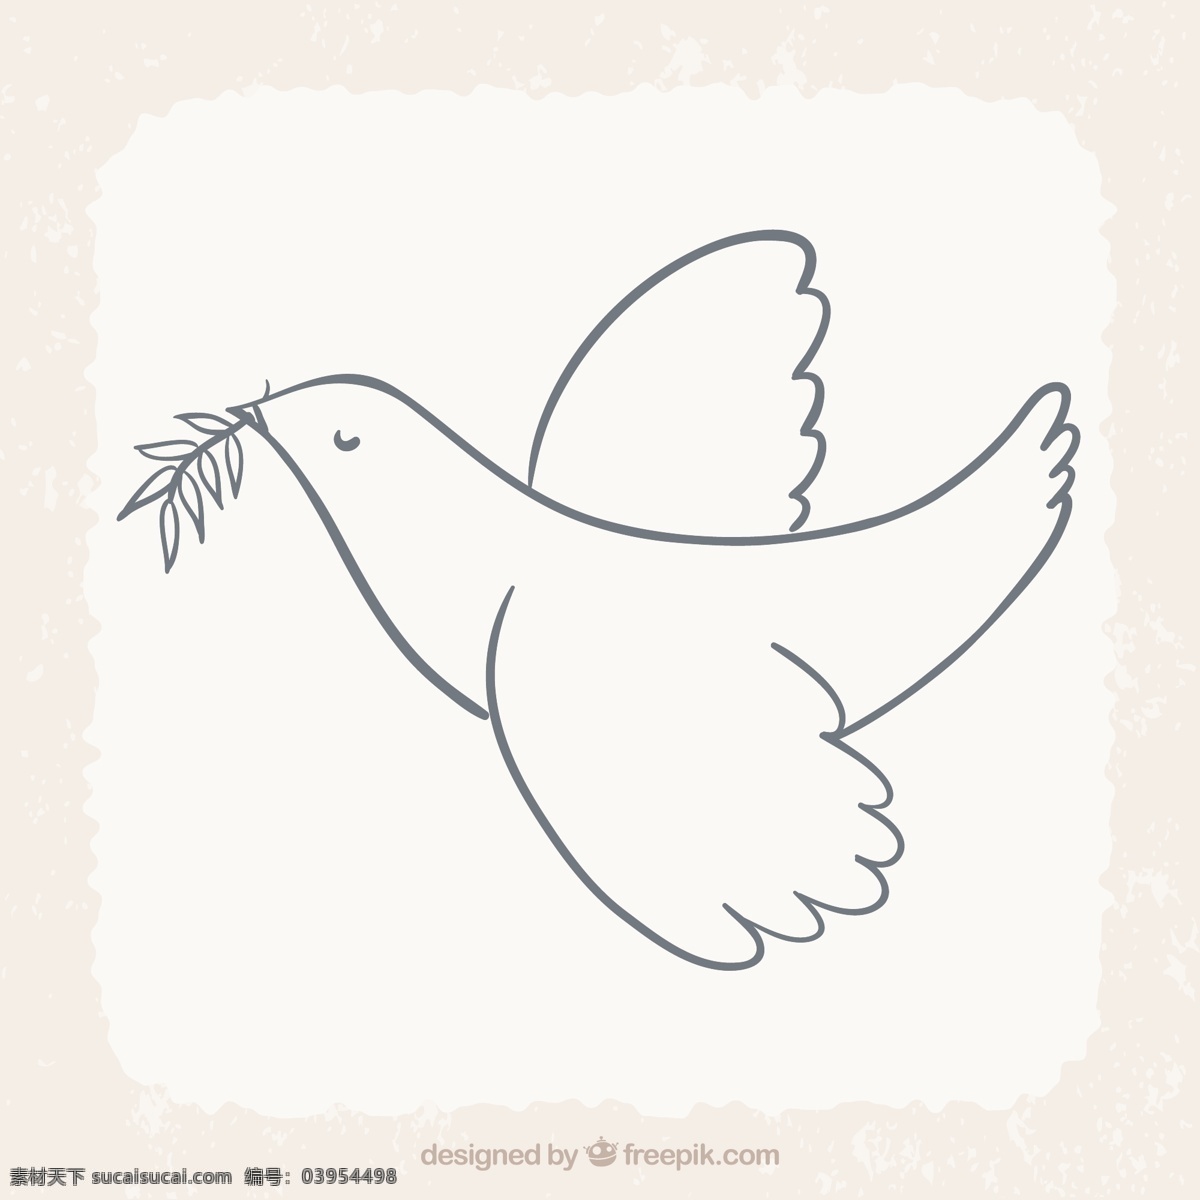 月桂树 叶飞 鸟 爱 叶 动物 树叶 月桂 和平 鸽子 白色 象征 爱鸟 国际 飞行 水平